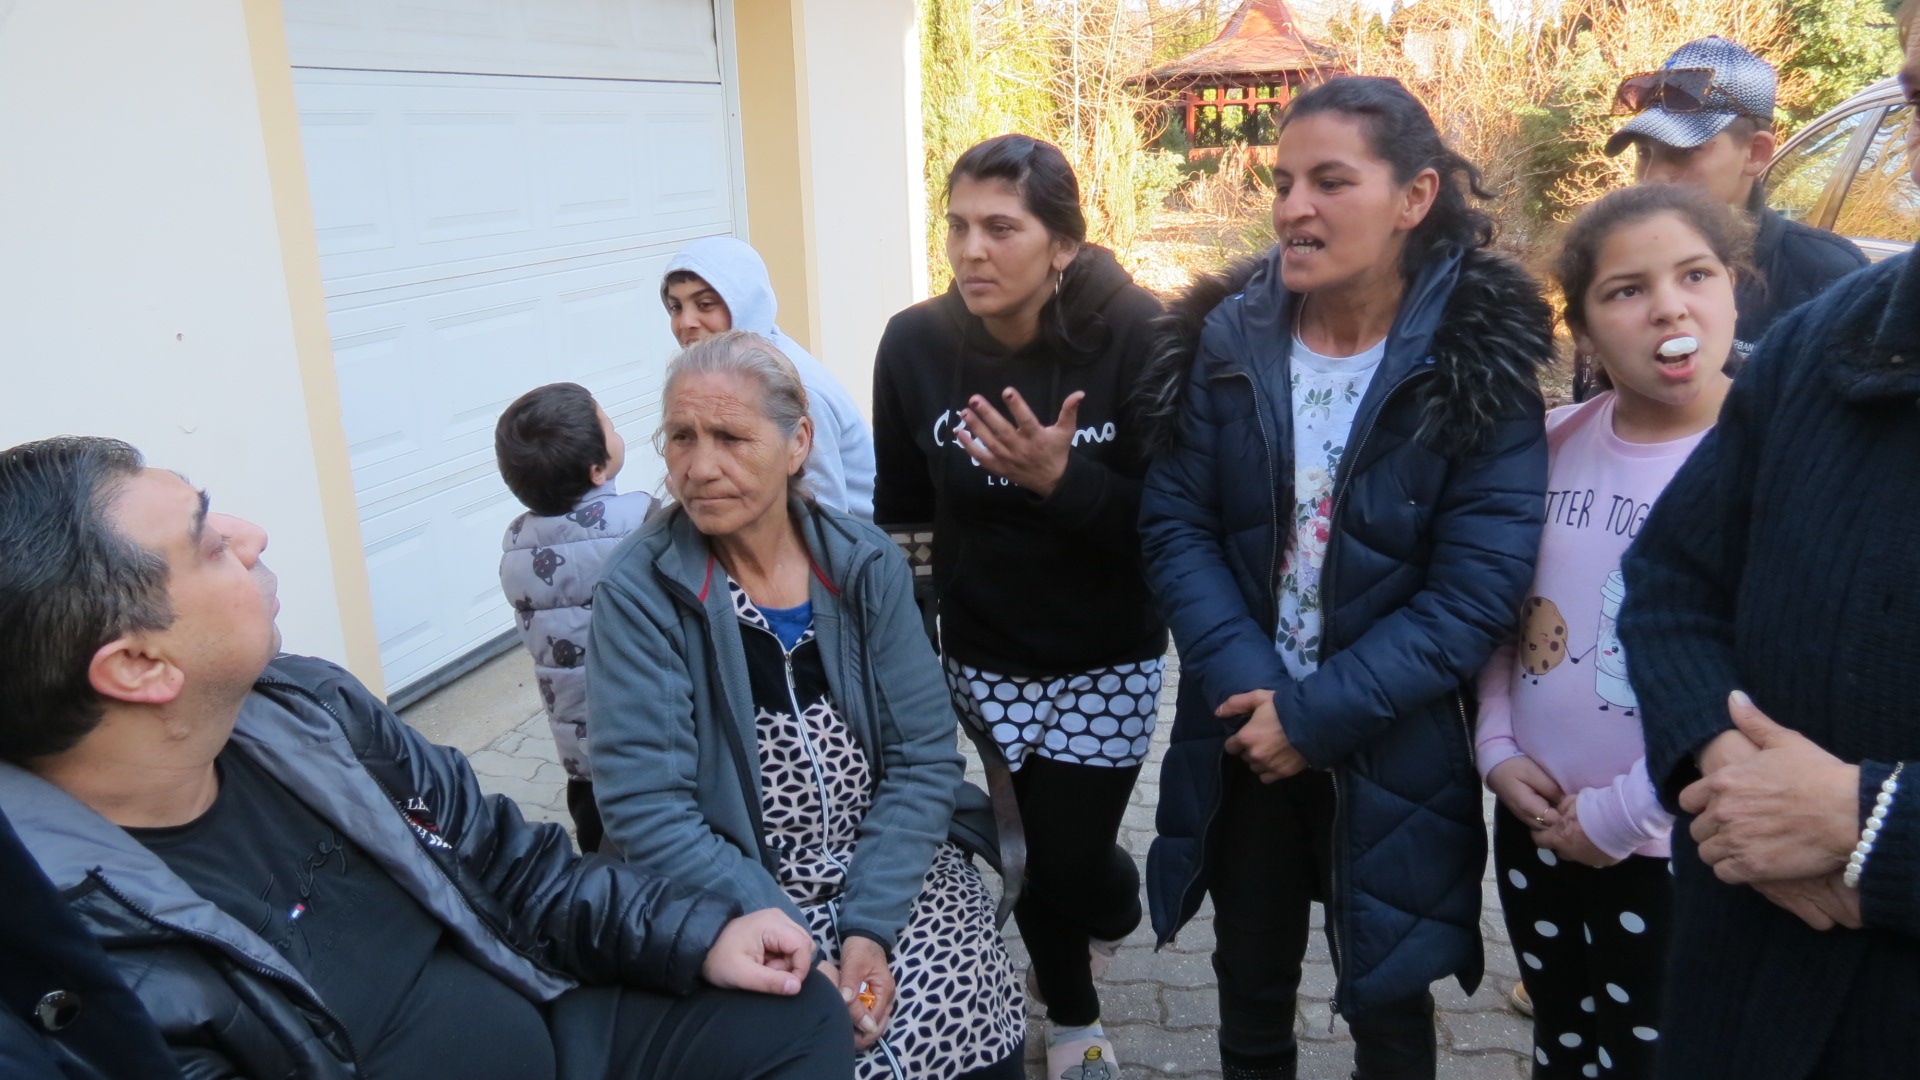 Obrázek: romove-v-bozicanech-prijimaji-humanitarni-pomoc-foto-dusan-vagai-1